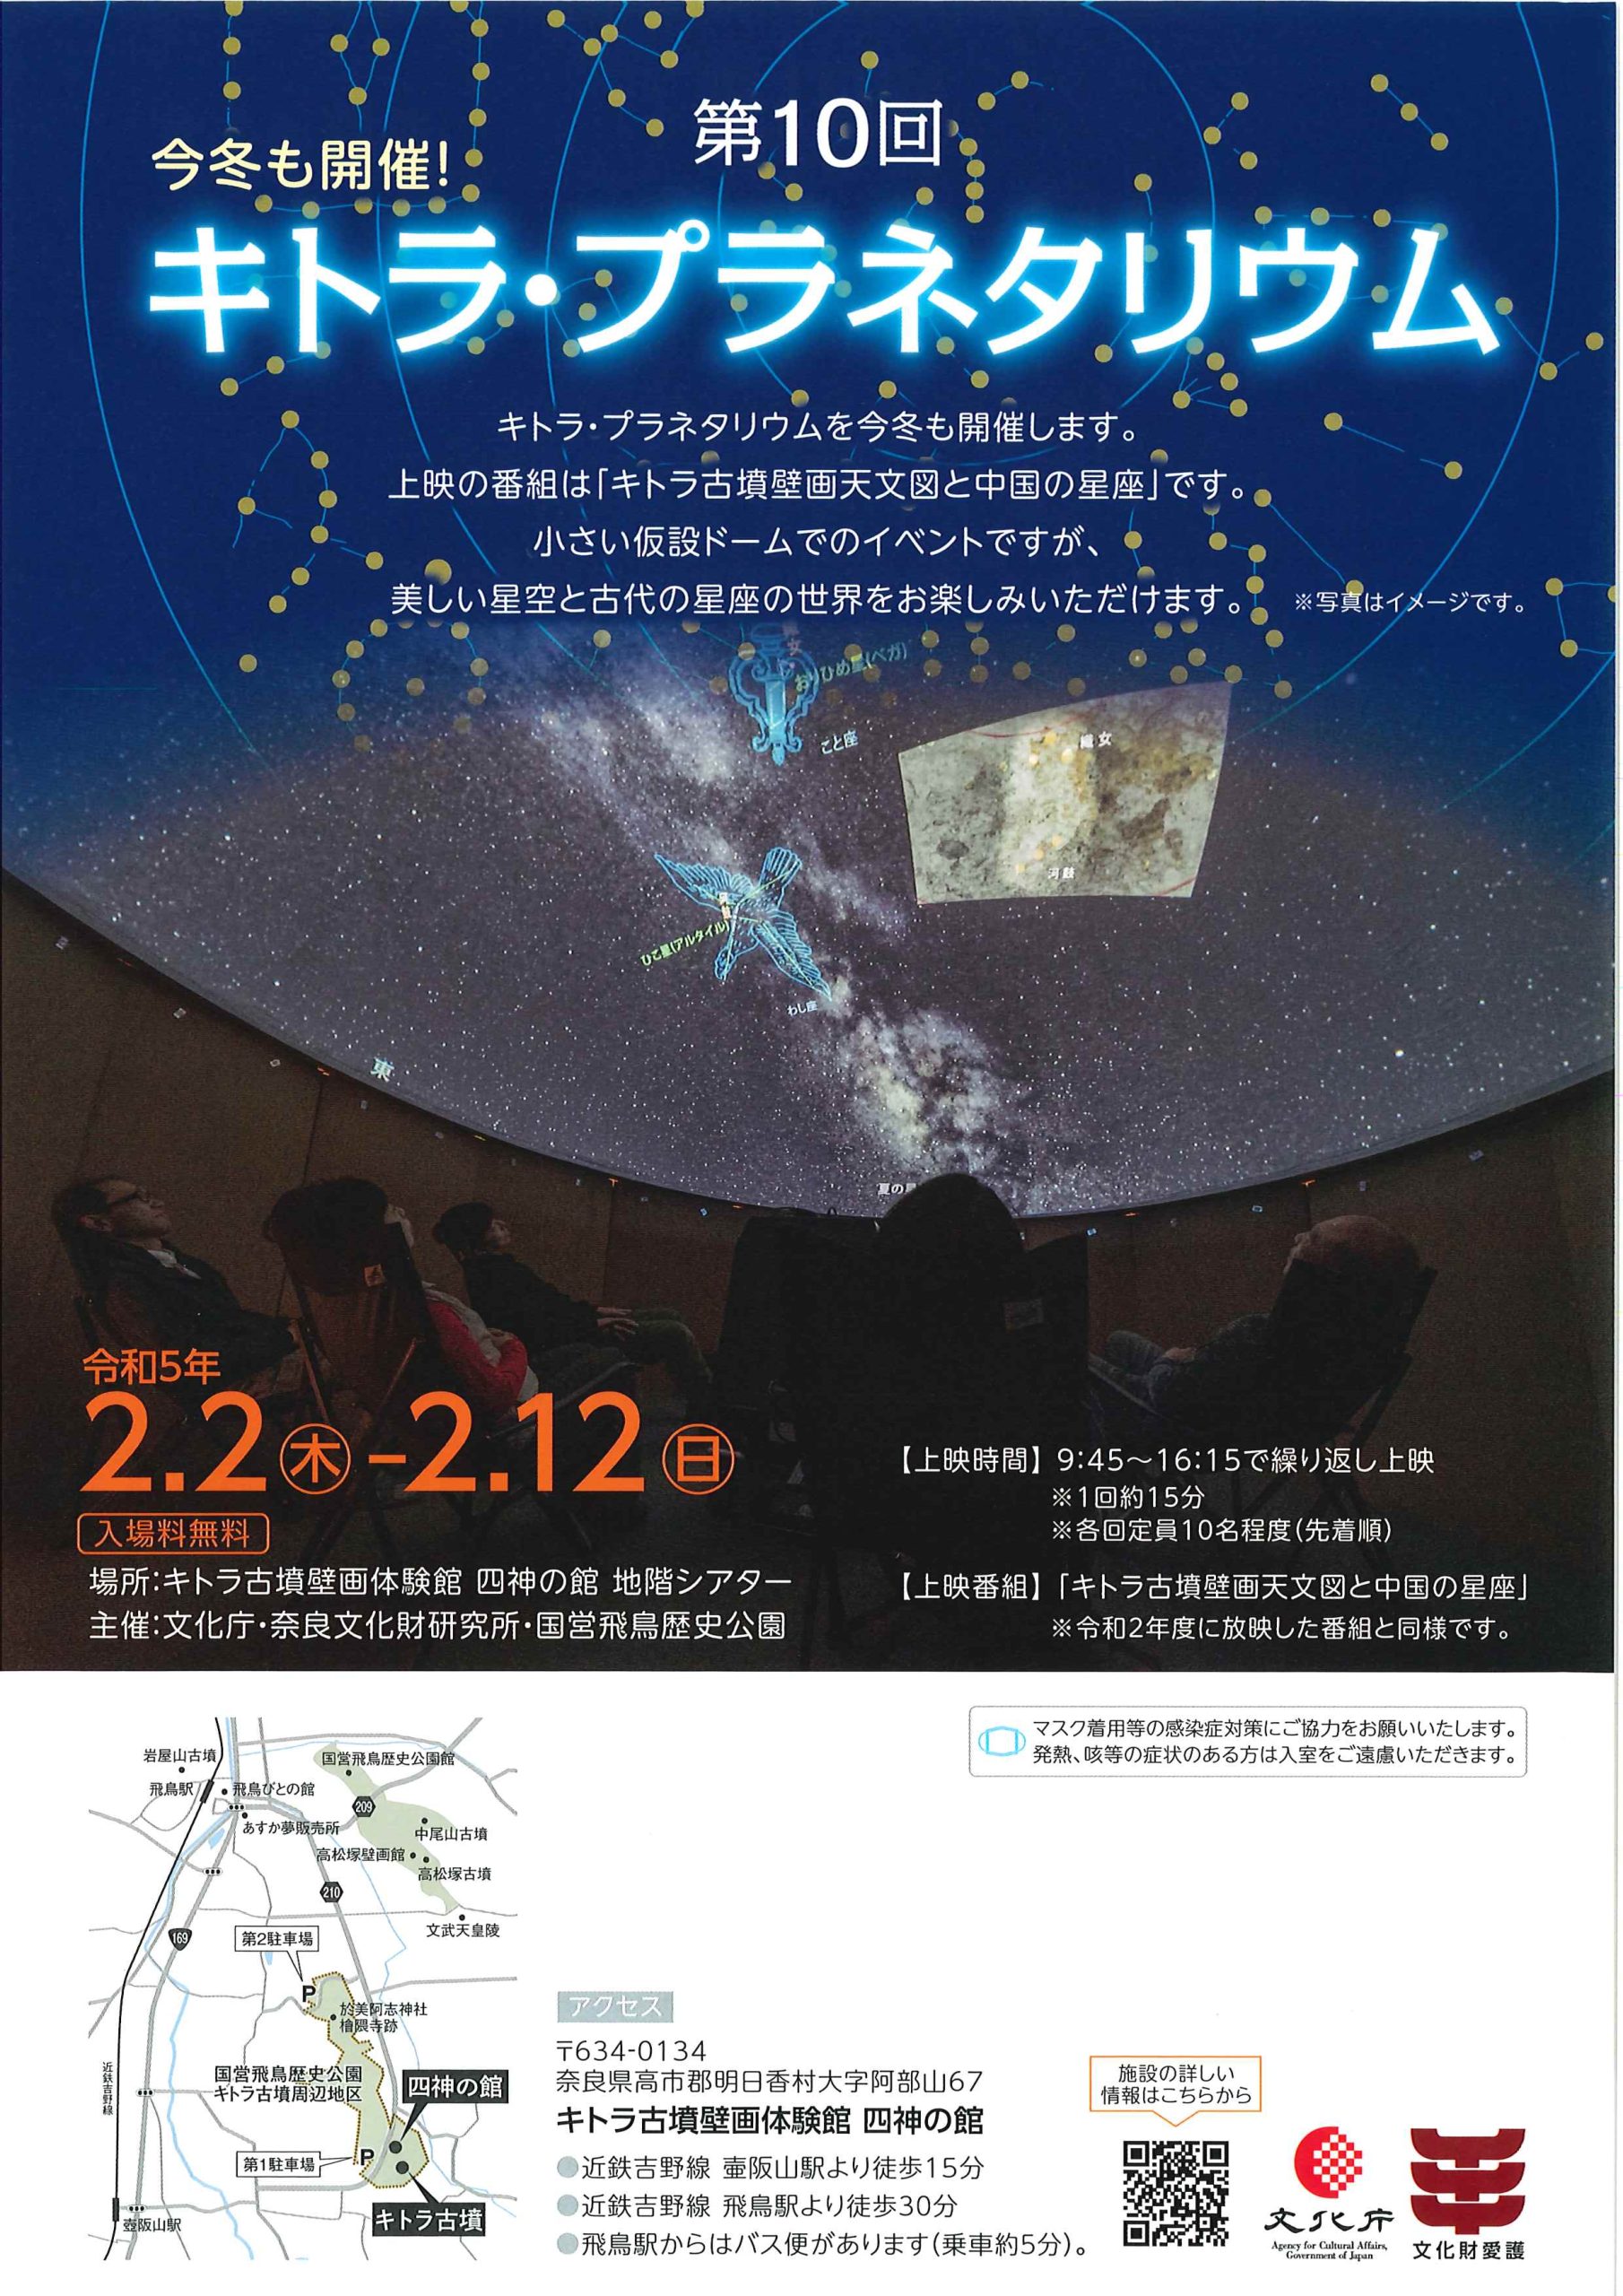 第10回キトラプラネタリウム「キトラ古墳壁画天文図と古代中国の天文学」